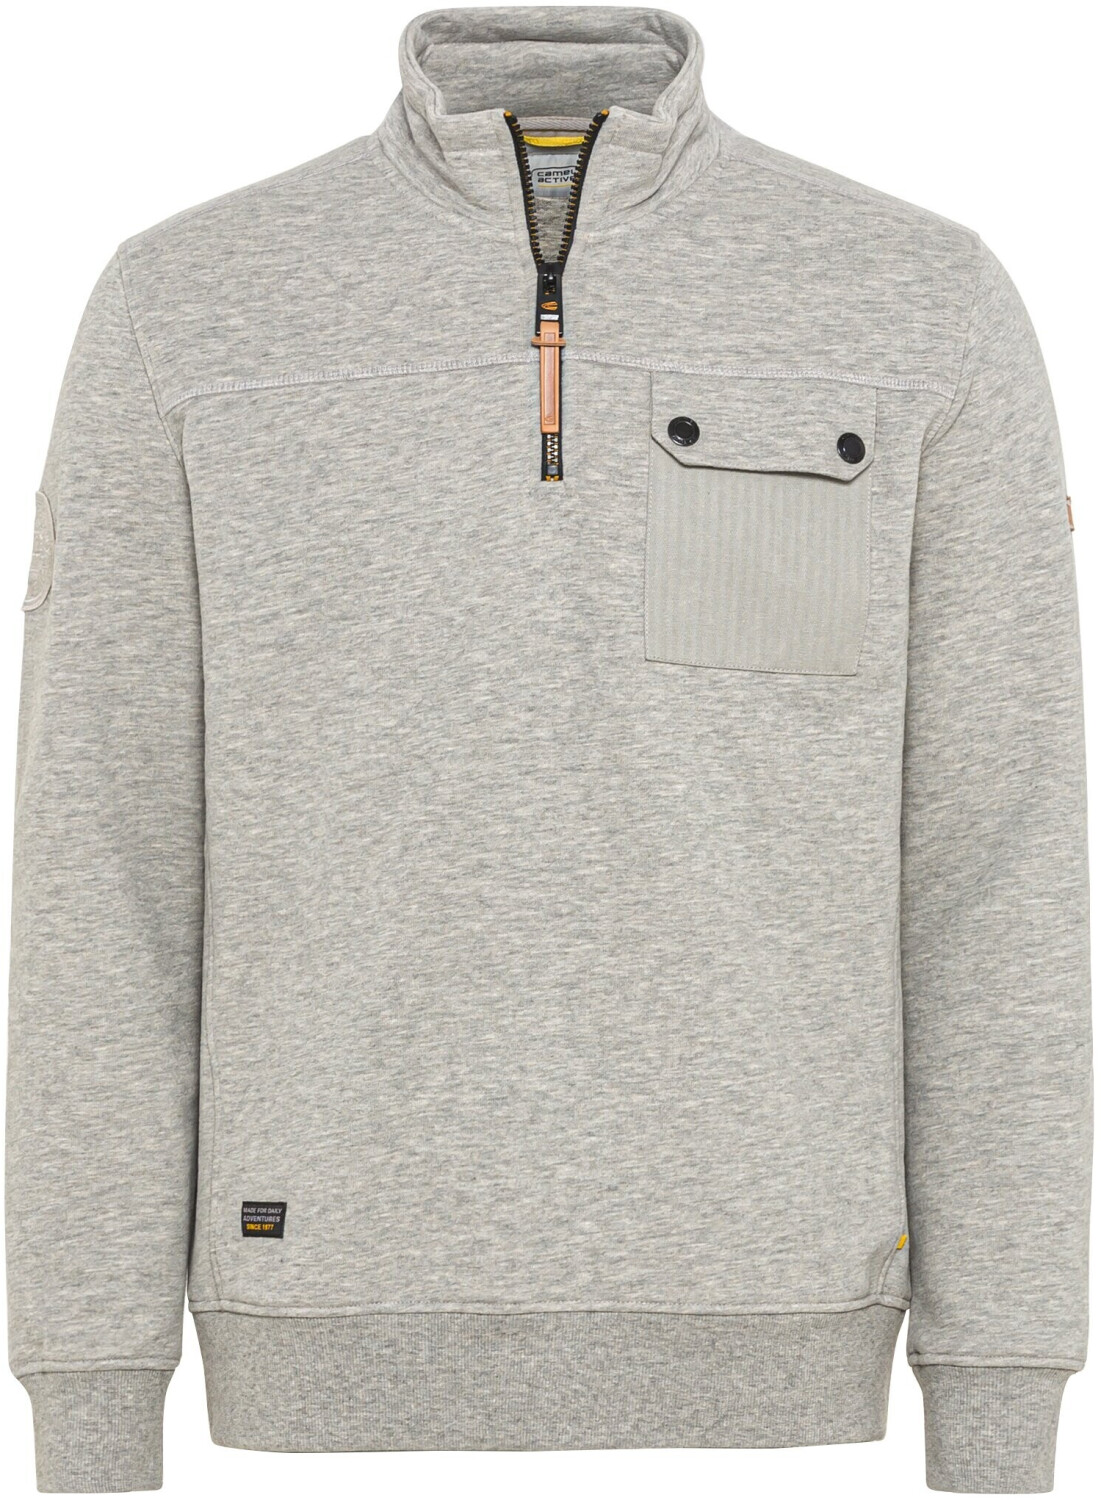 Camel Active Sweatshirt Troyer mit Stehkragen (409420-8W14-06) stone gray  ab 72,00 € | Preisvergleich bei